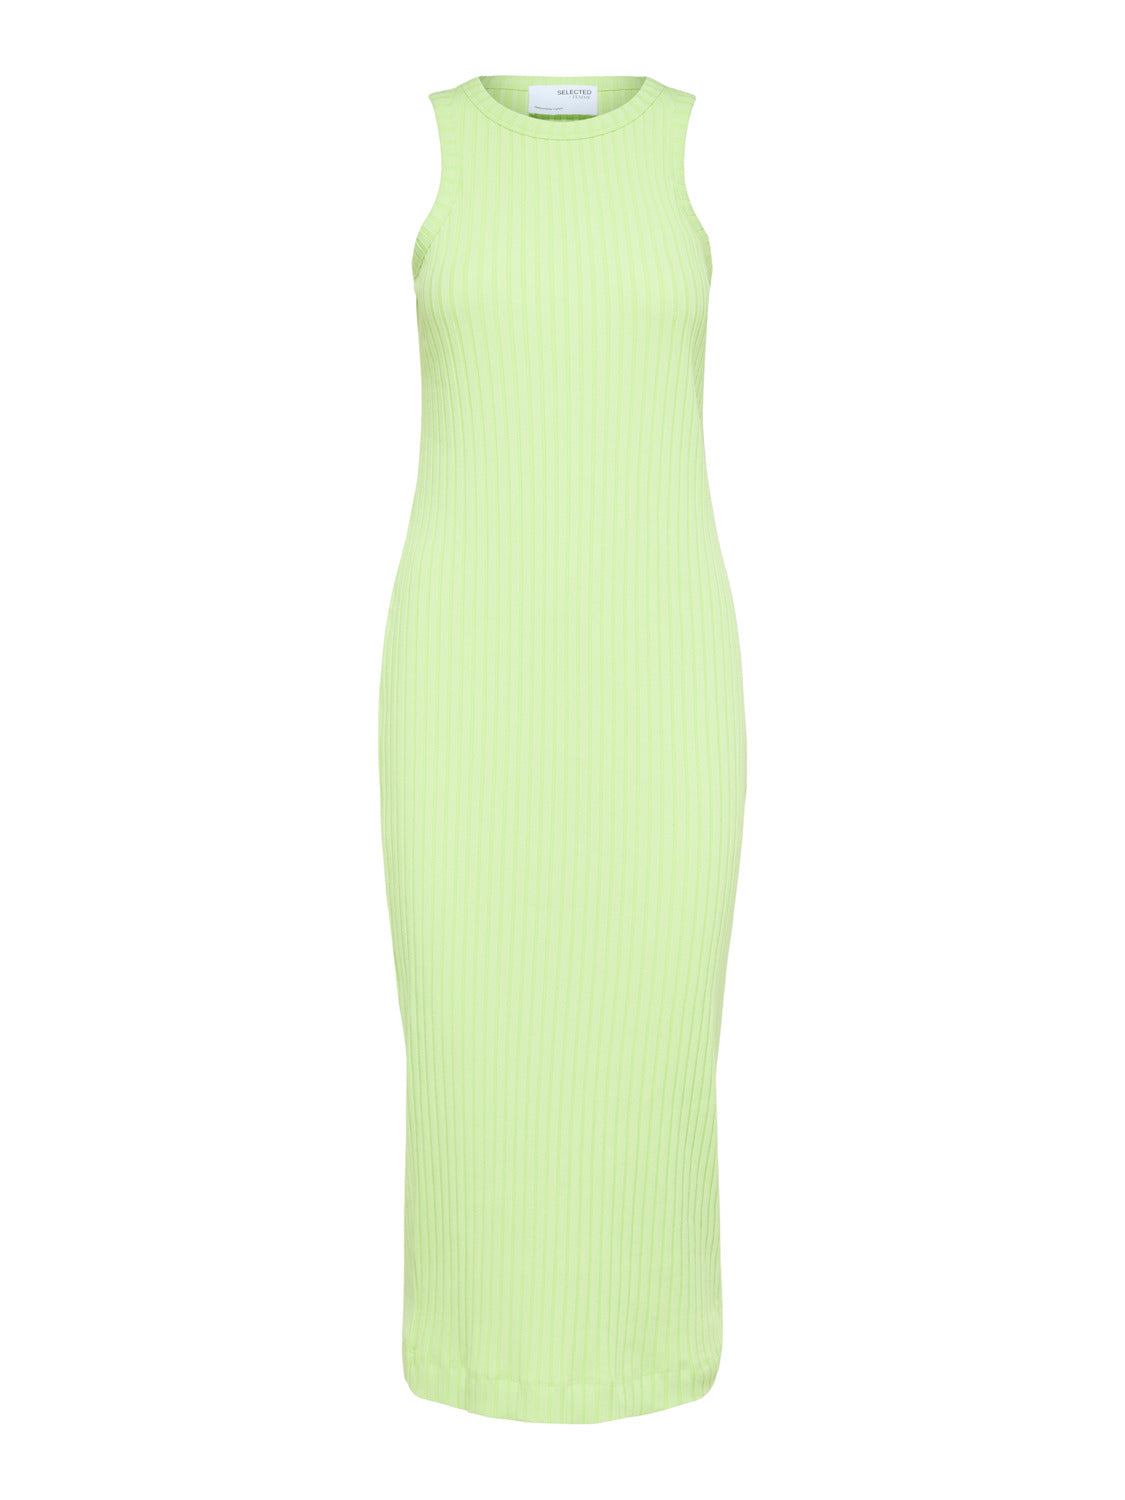 SLFADA Dress - Sharp Green